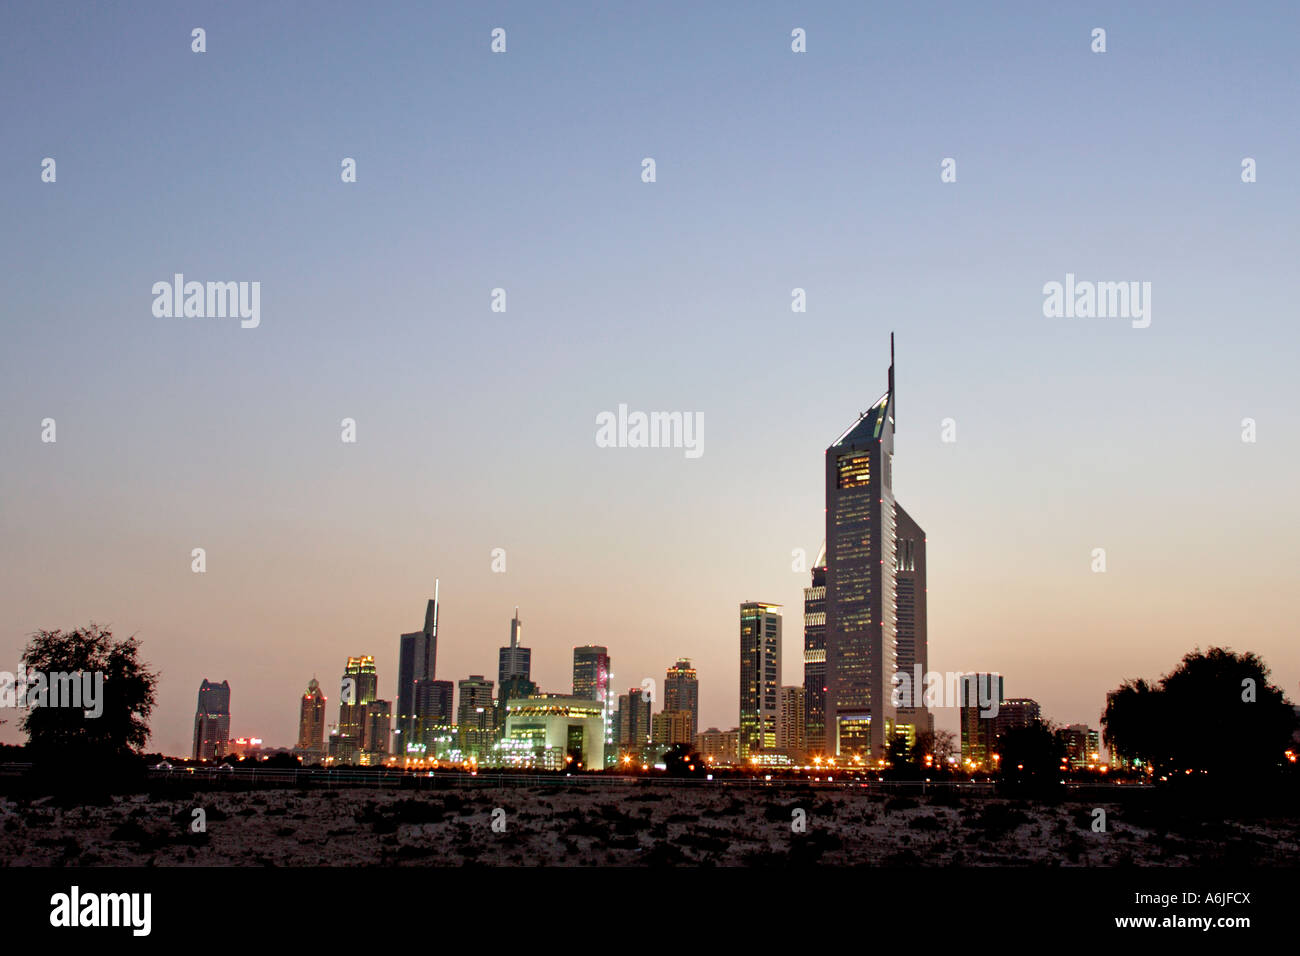 Dubai in the evening, United Arab Emirates Stock Photo